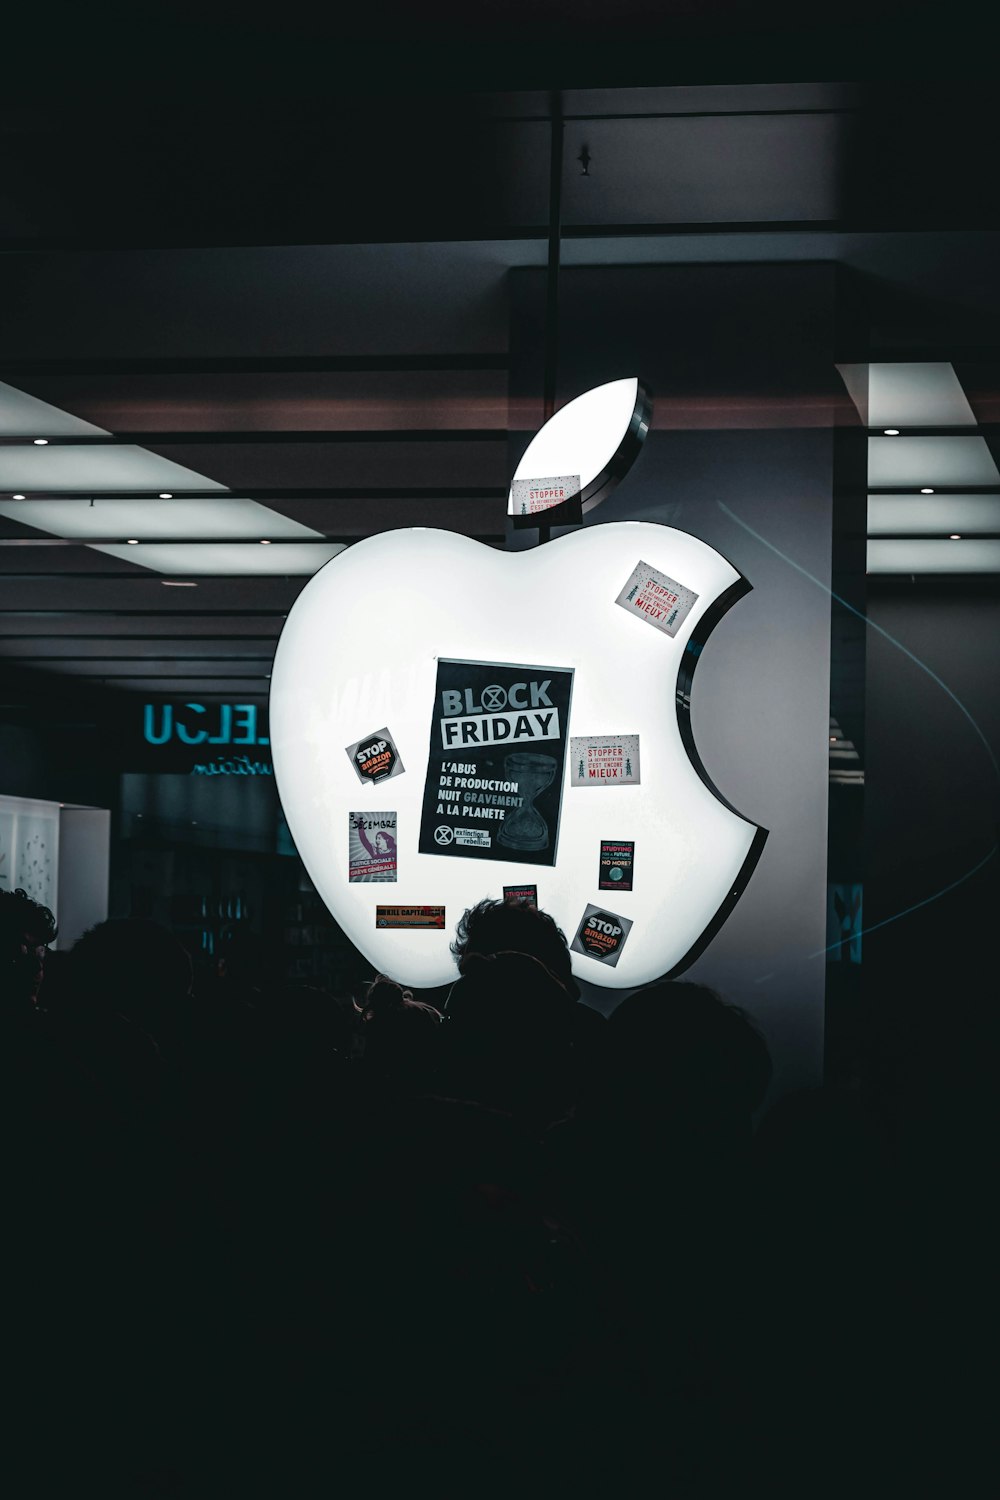 Un anuncio de Apple se muestra en una habitación oscura